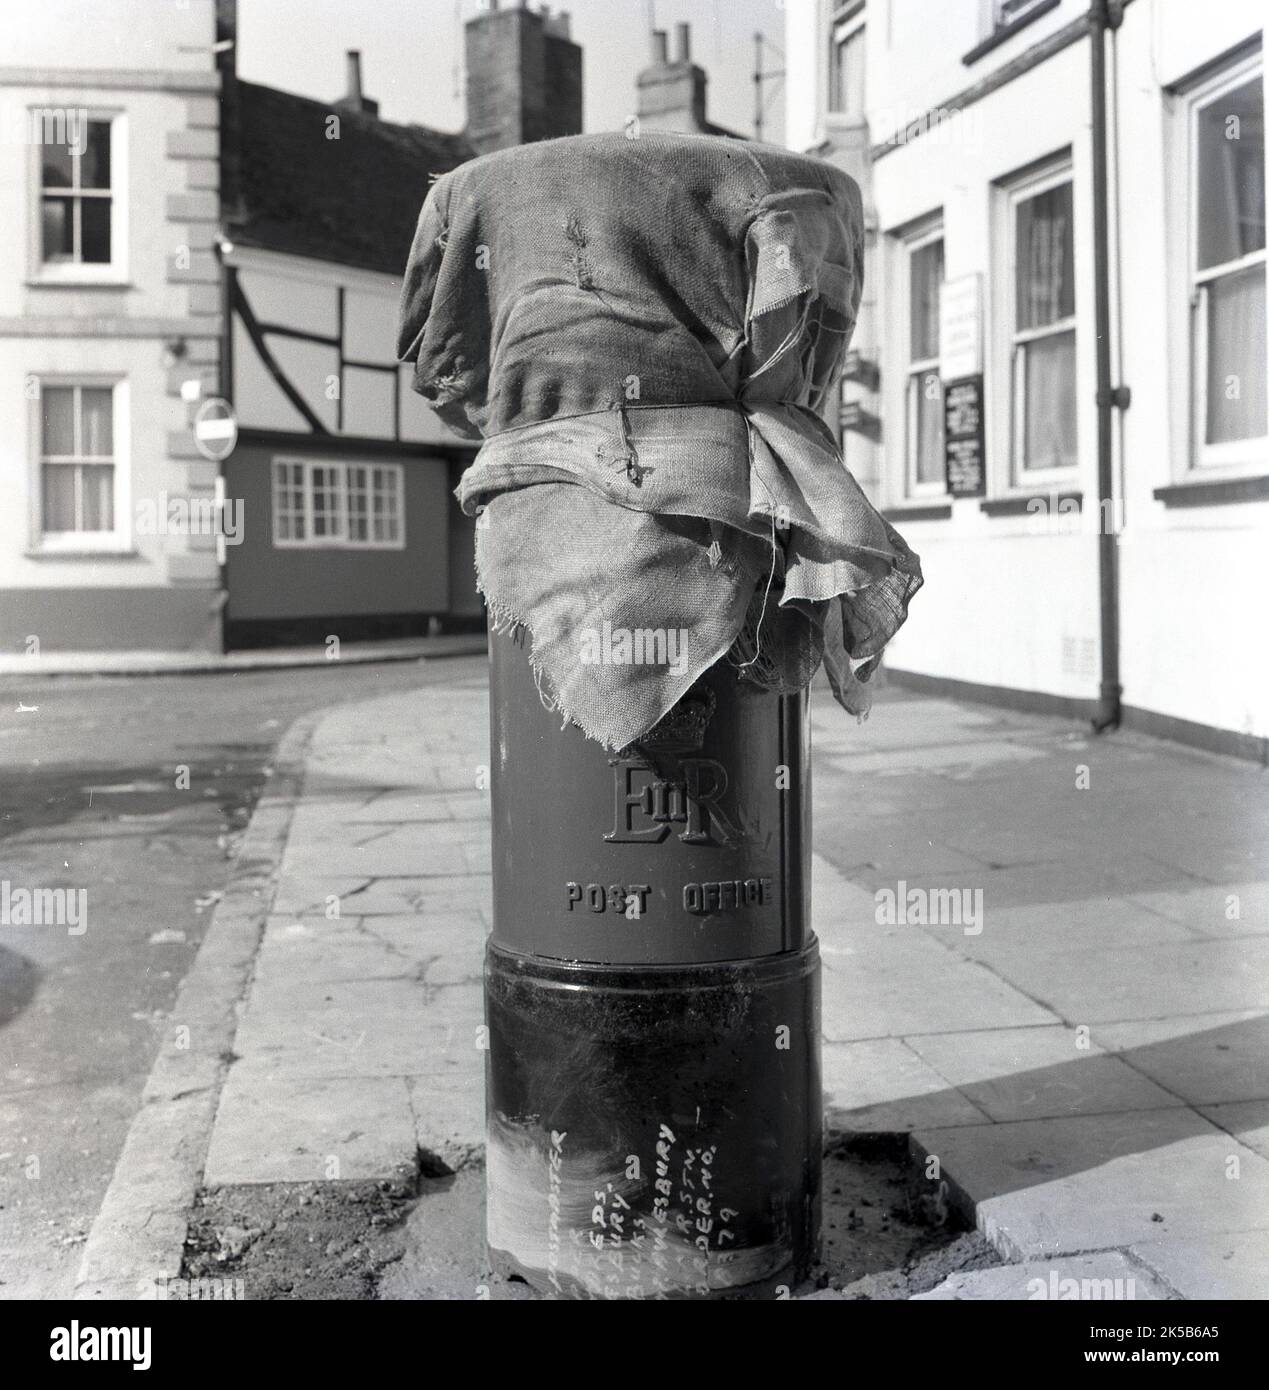 1964, histórico, sobre un pavimento, un pilar recién erigido o una caja de correos cubierto con viejos sacos postales, todavía no en uso, como su base de hormigón necesitaba para establecerse, Aylesbury, Inglaterra, Reino Unido. Foto de stock